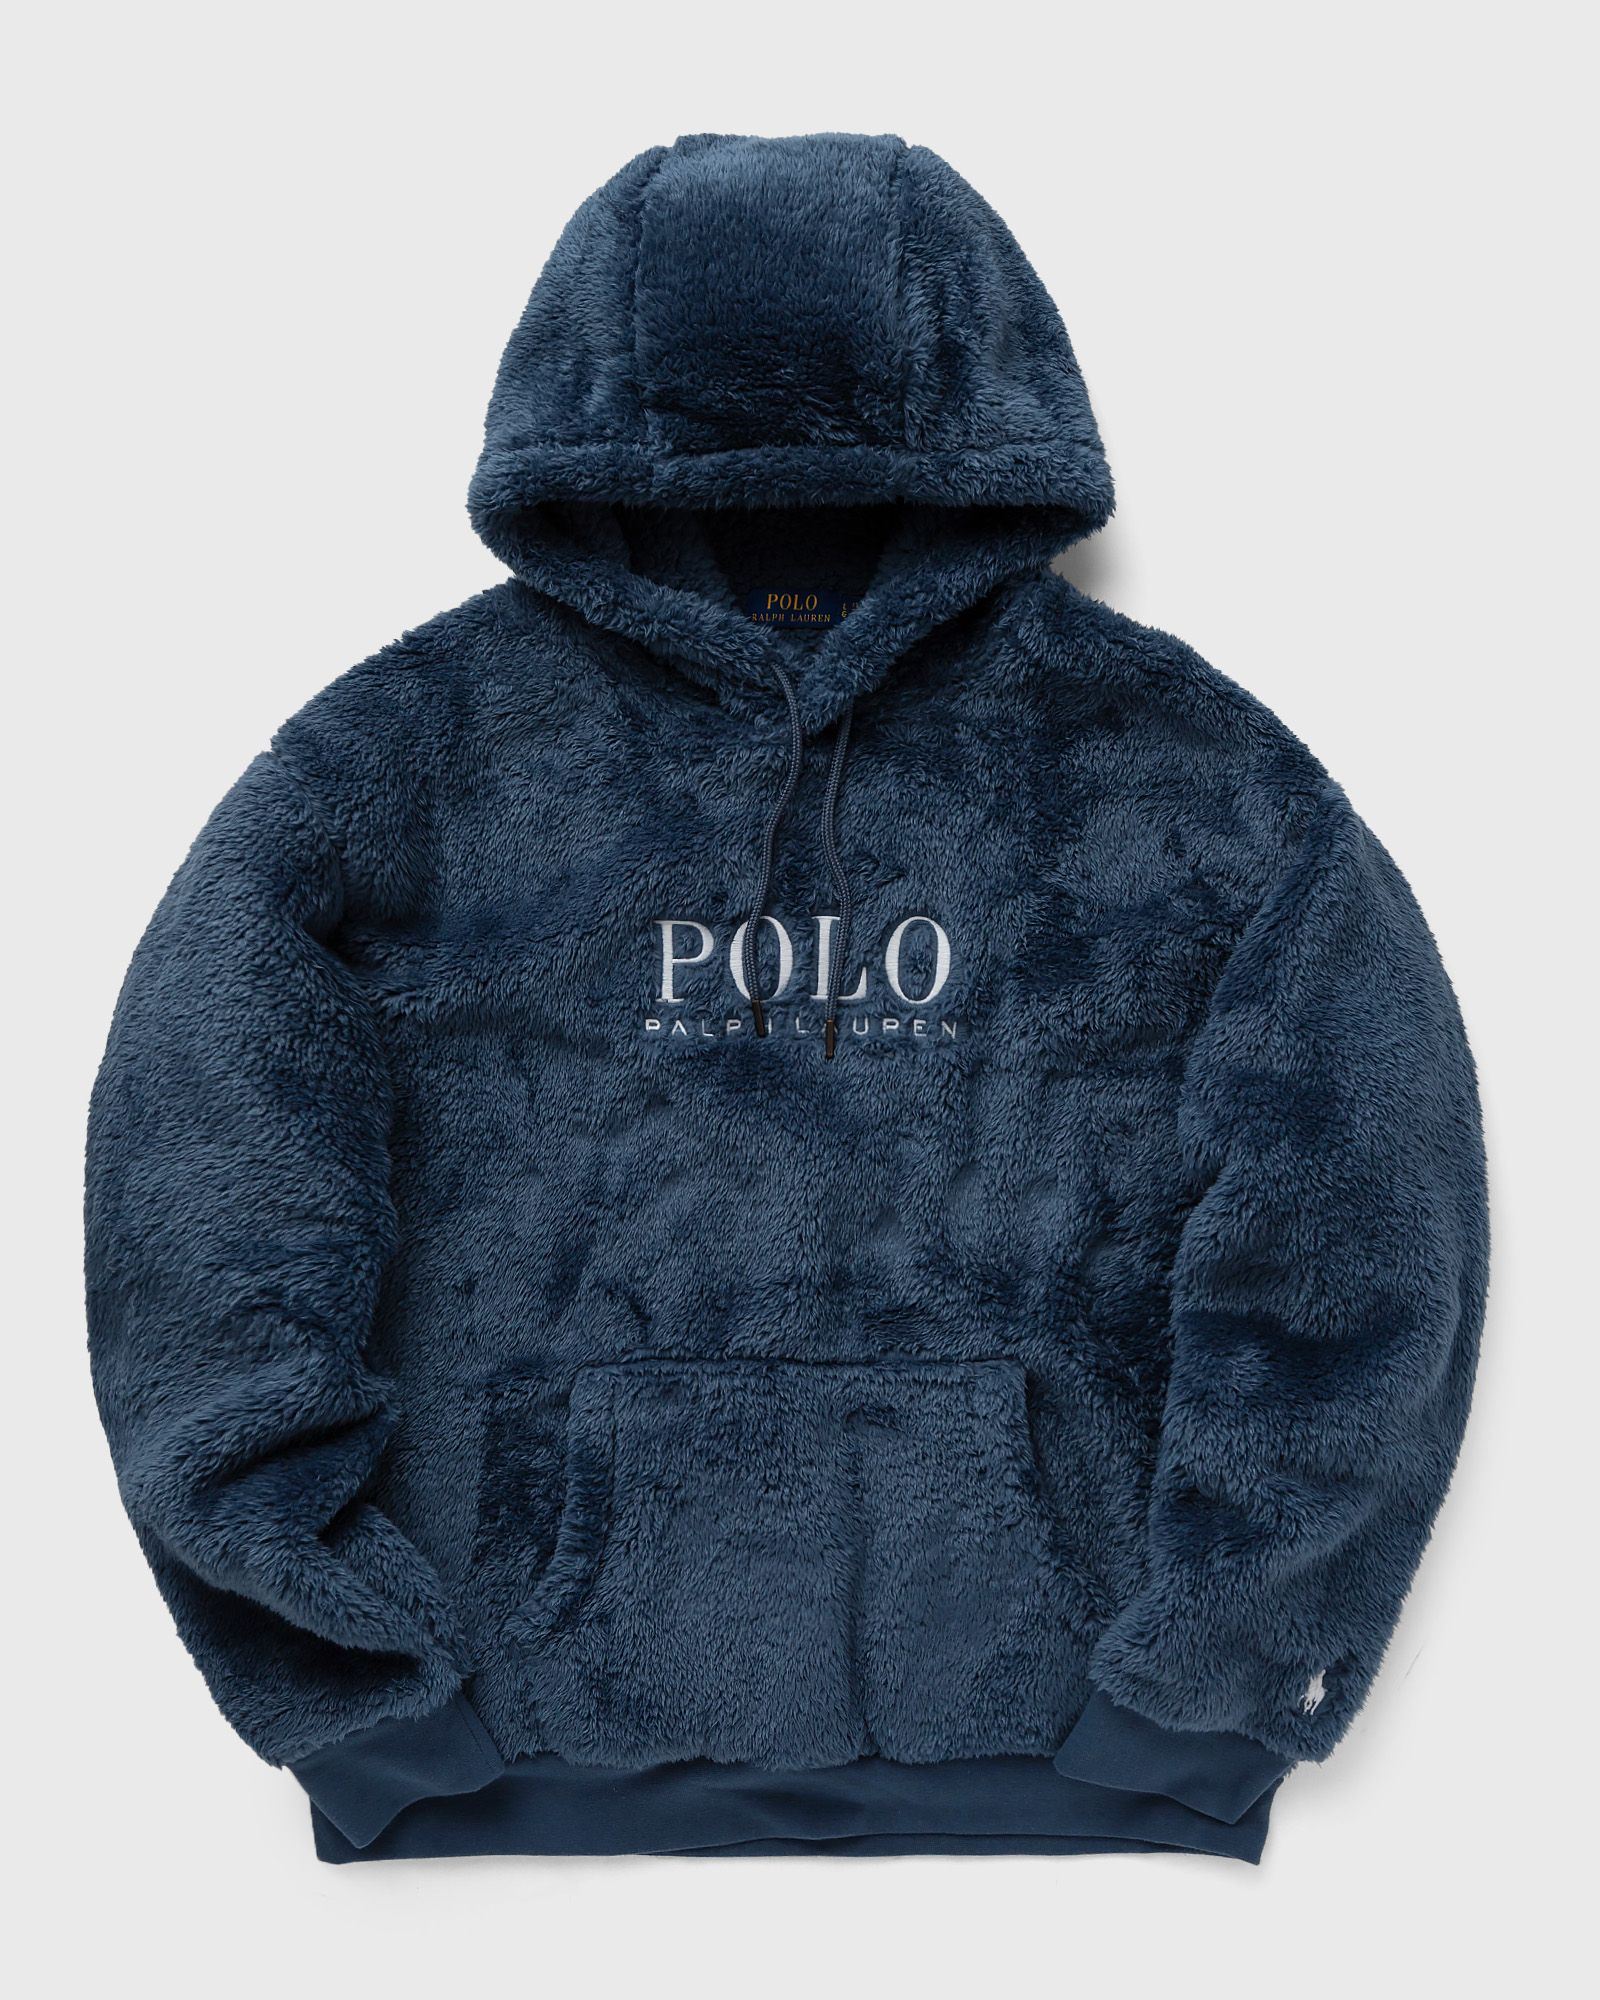 Polo Ralph Lauren - long sleeve-sweatshirt men hoodies blue in größe:l